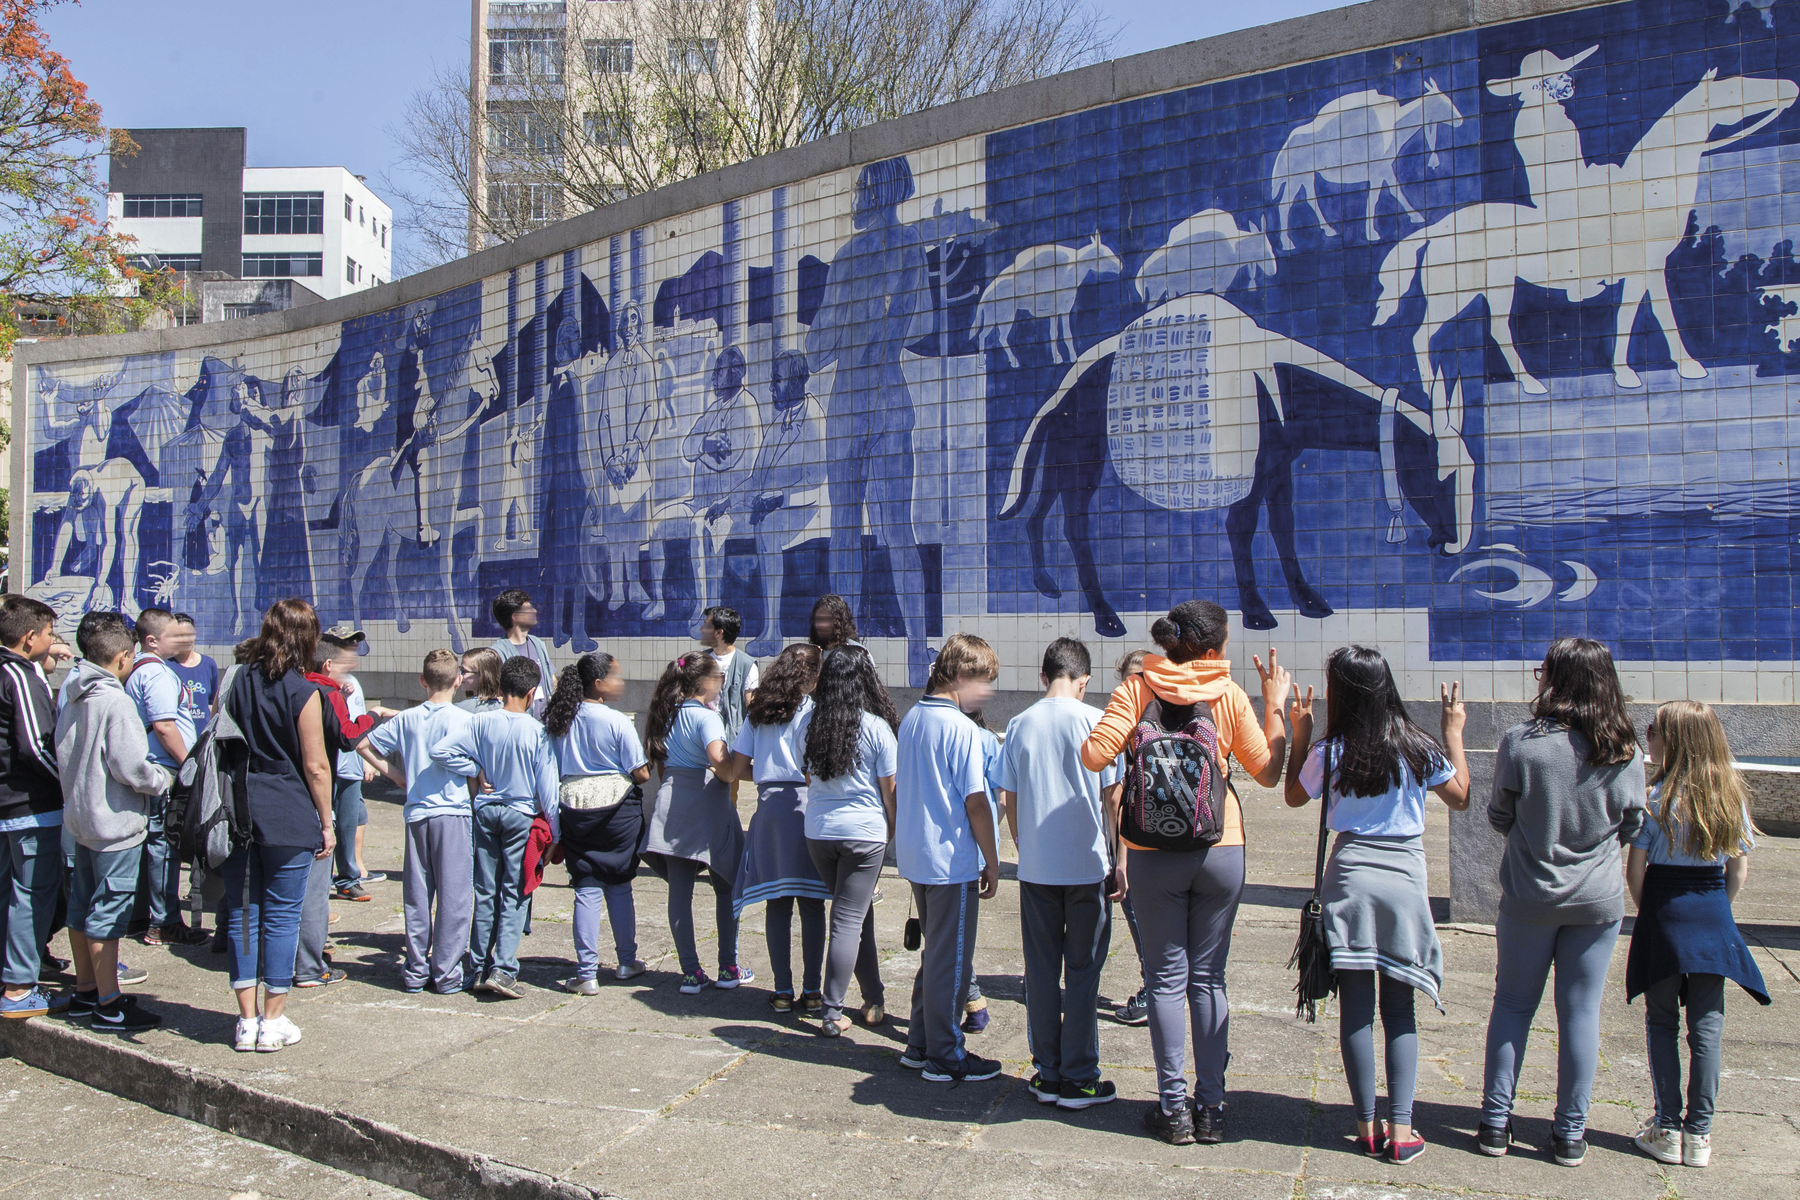 Fotografia. Um grupo de crianças lado a lado, em frente a um mural de azulejos, representando homens e animais em atividades diversas.